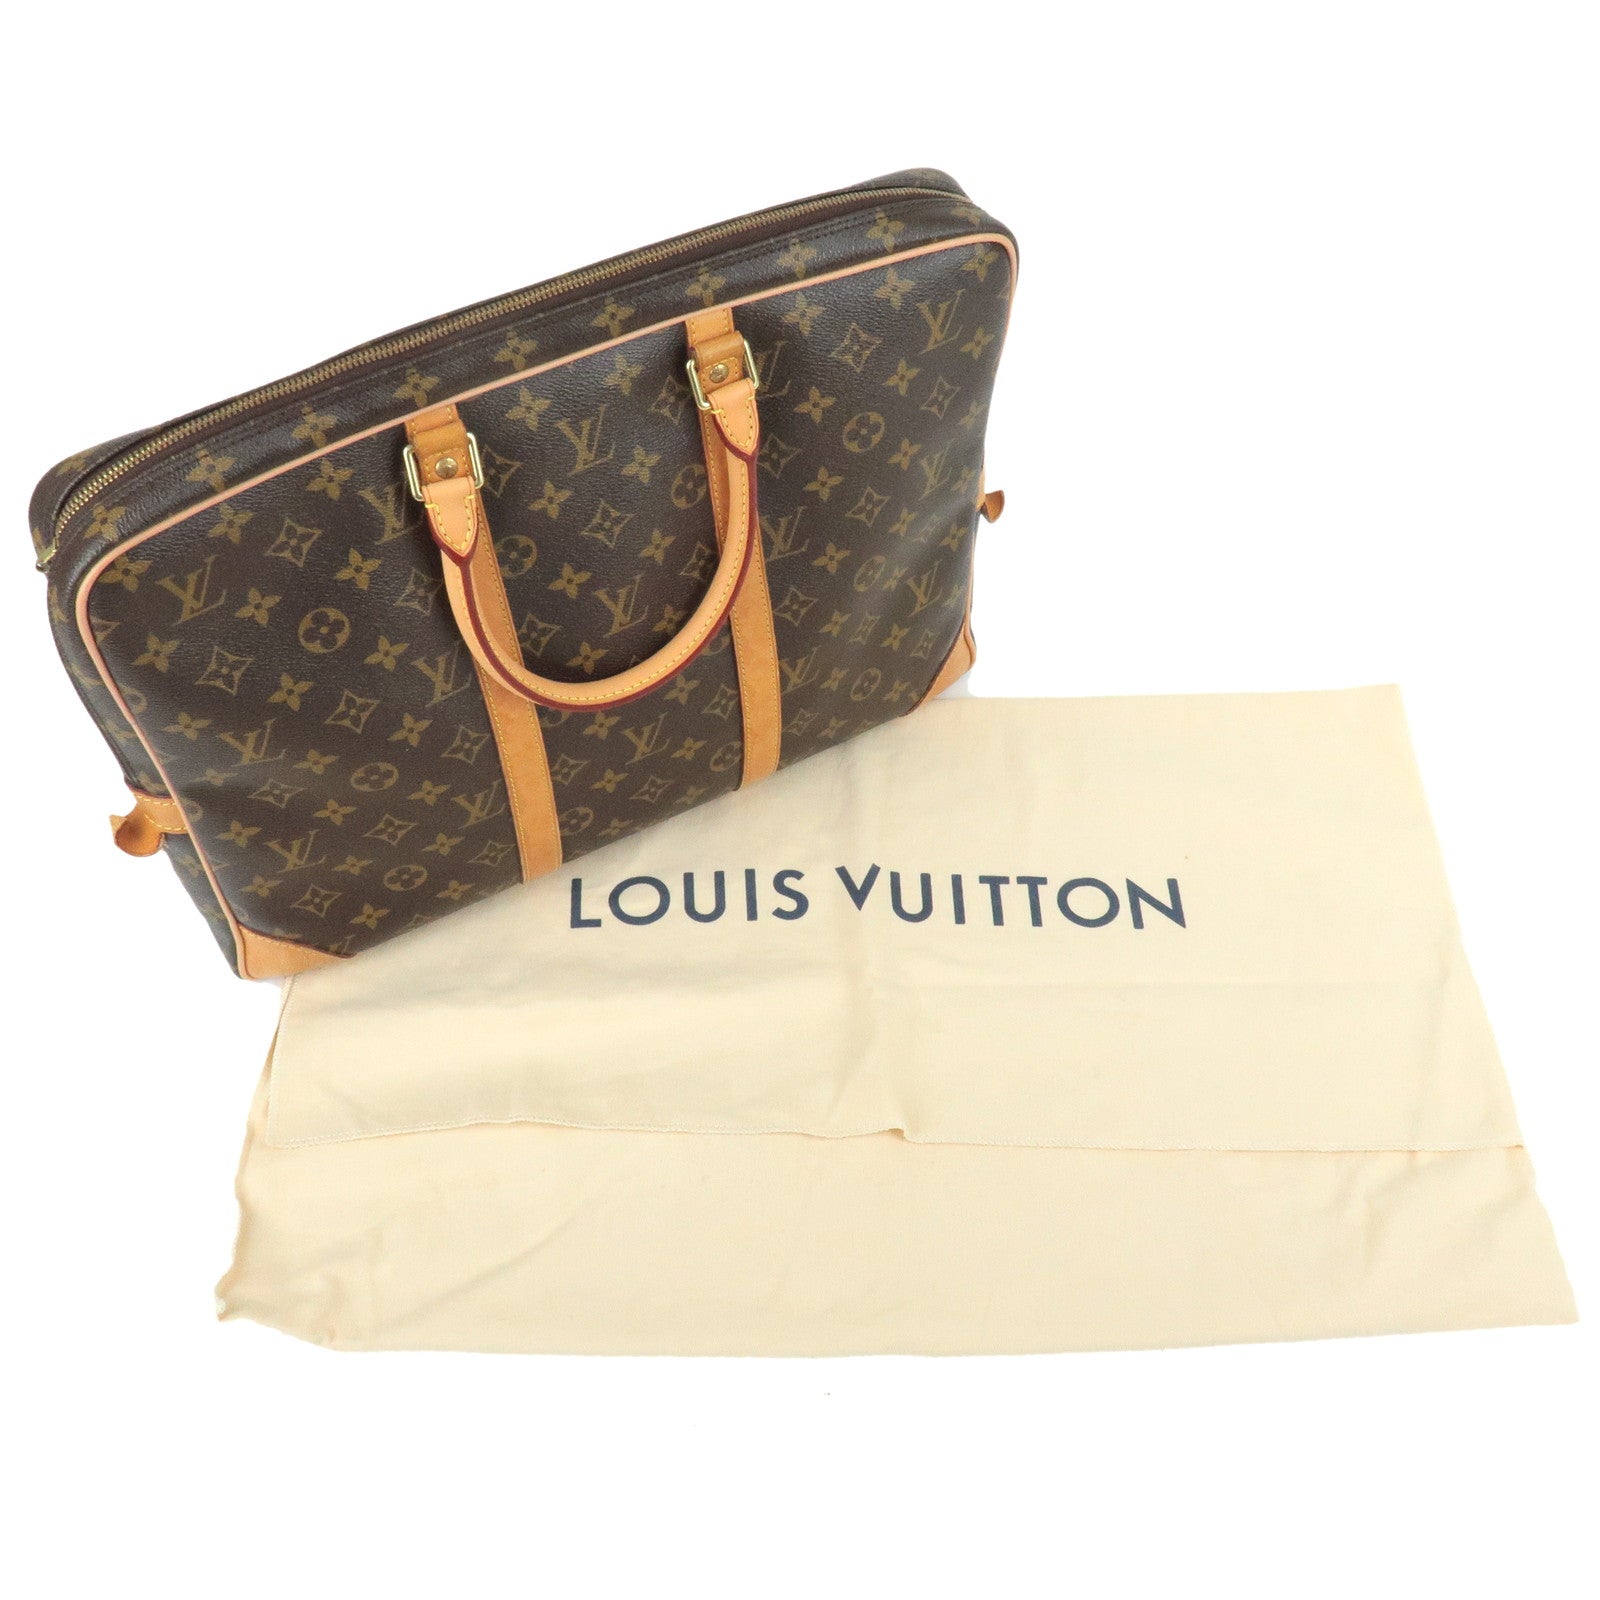 Louis Vuitton - Monogram Canvas Porte-Documents Voyage